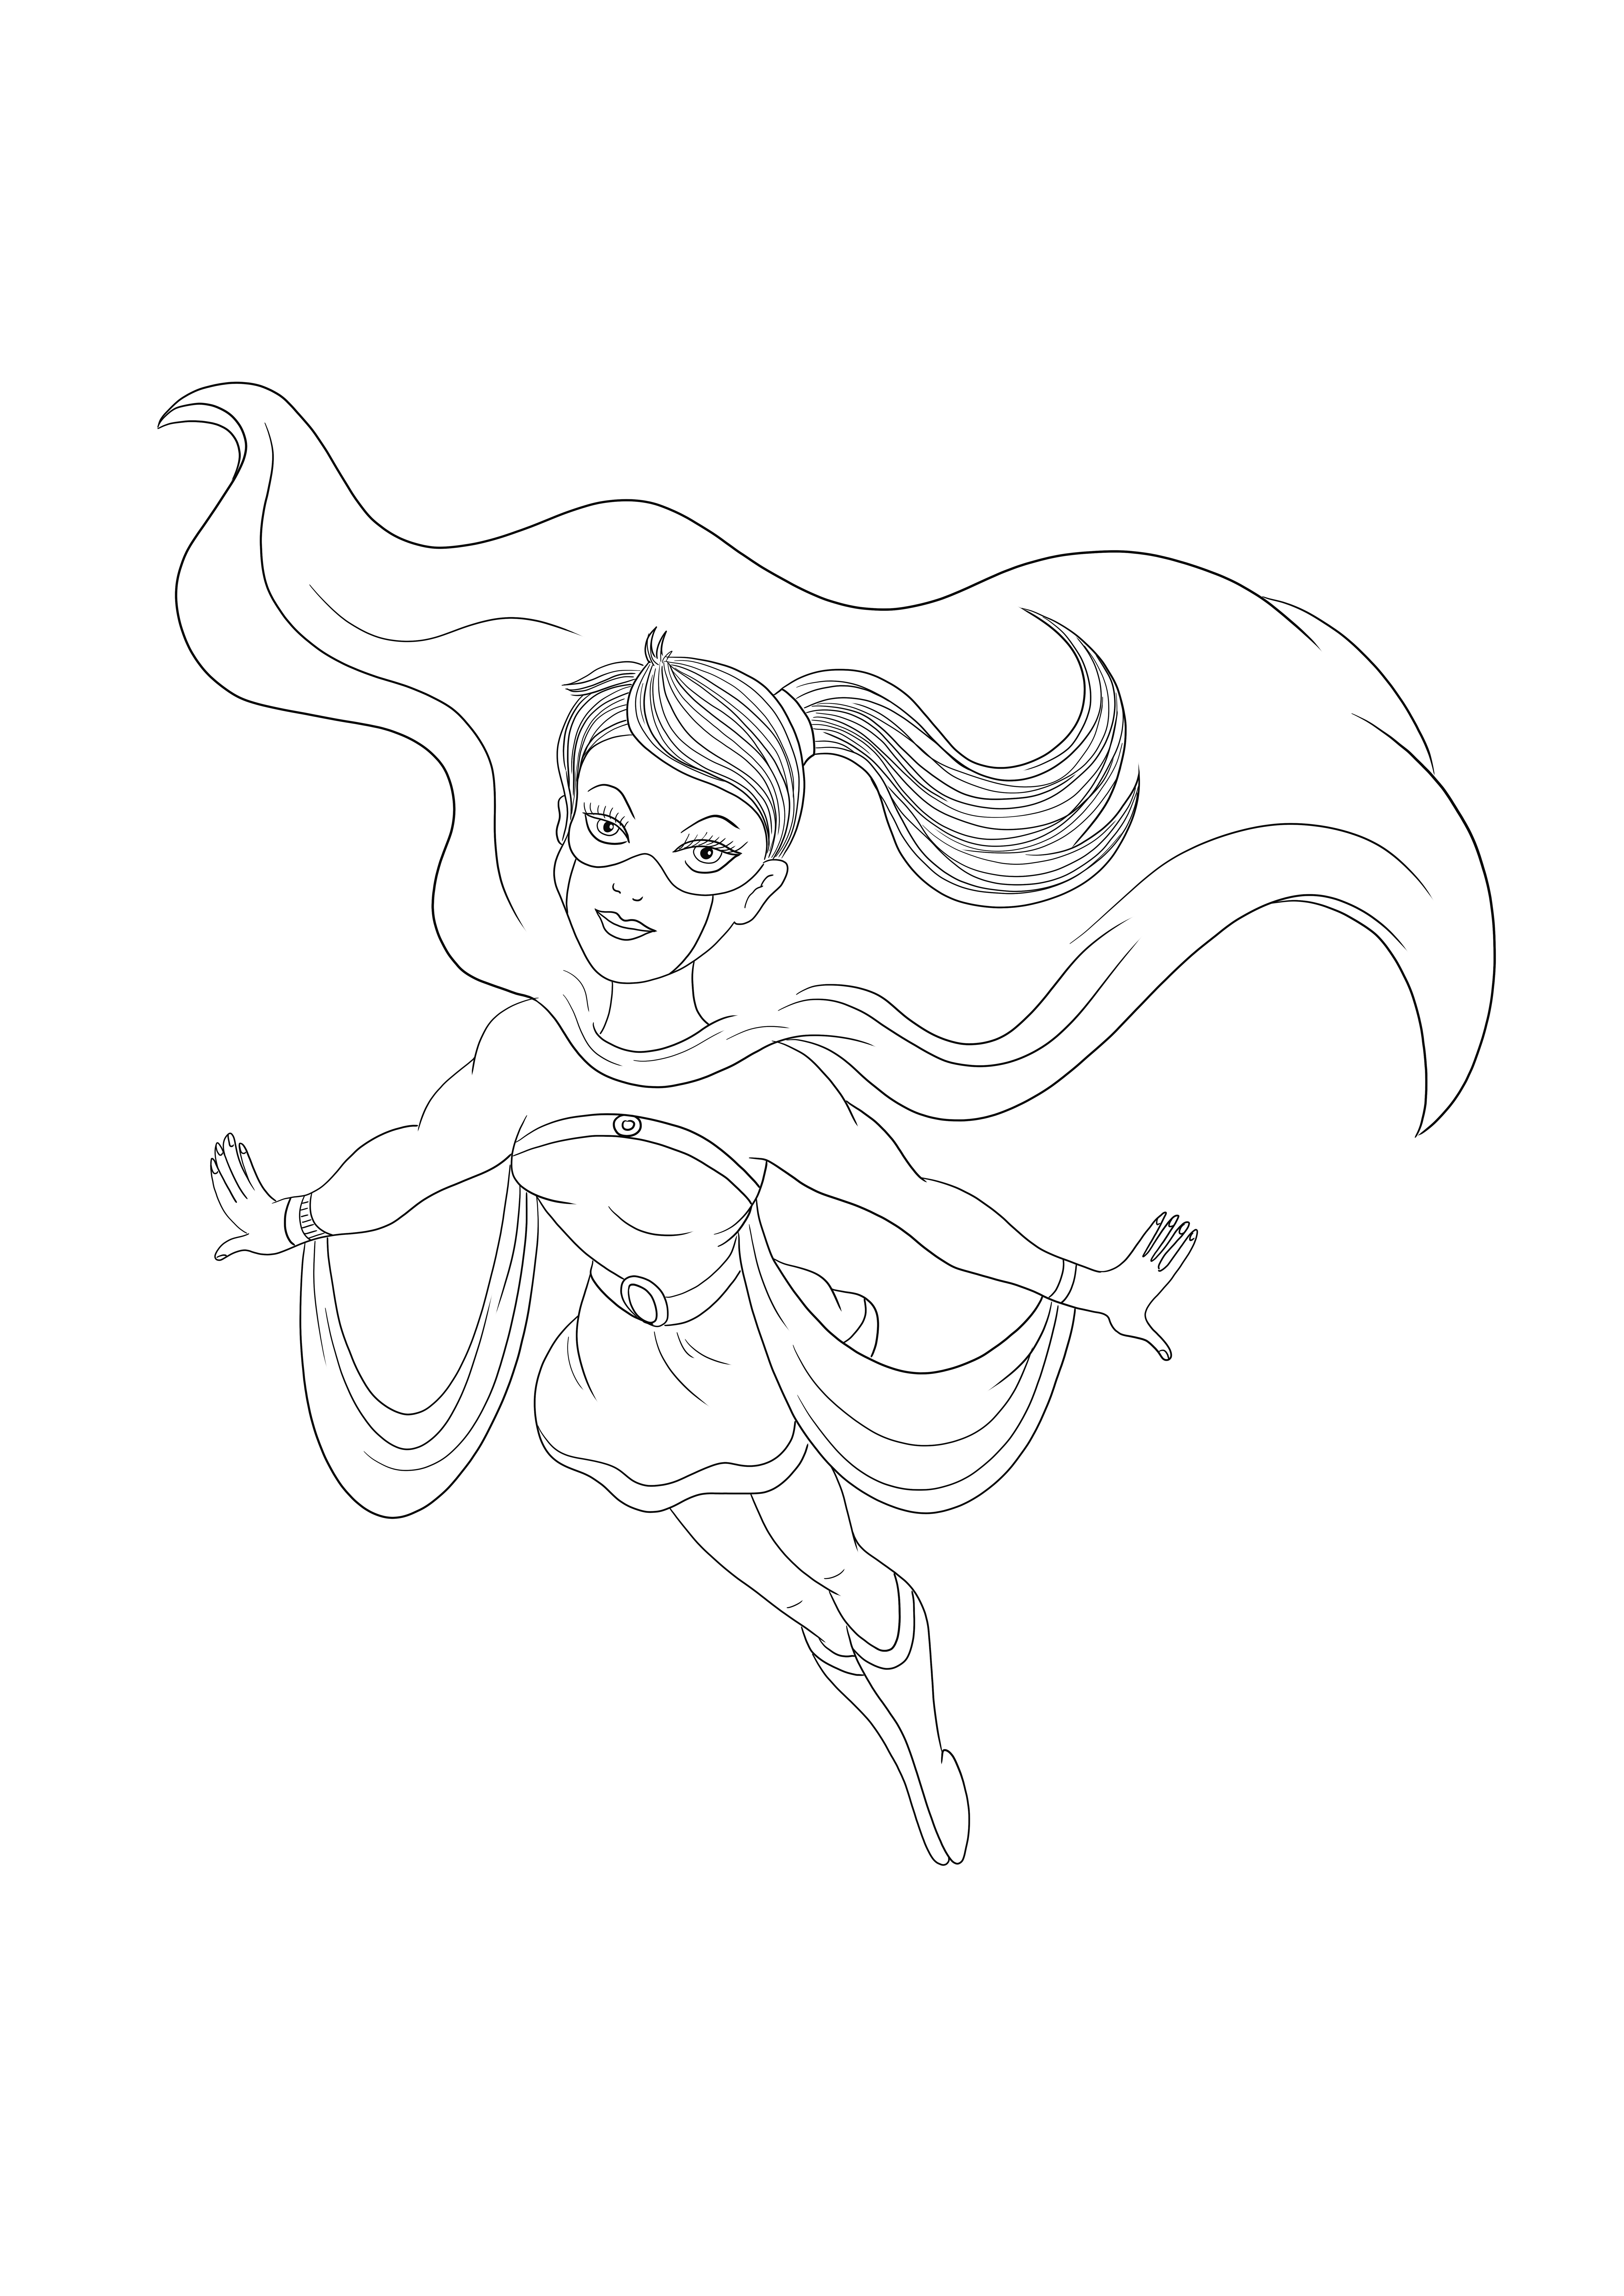 Supergirl sta volando in soccorso e aspetta di essere colorata gratuitamente